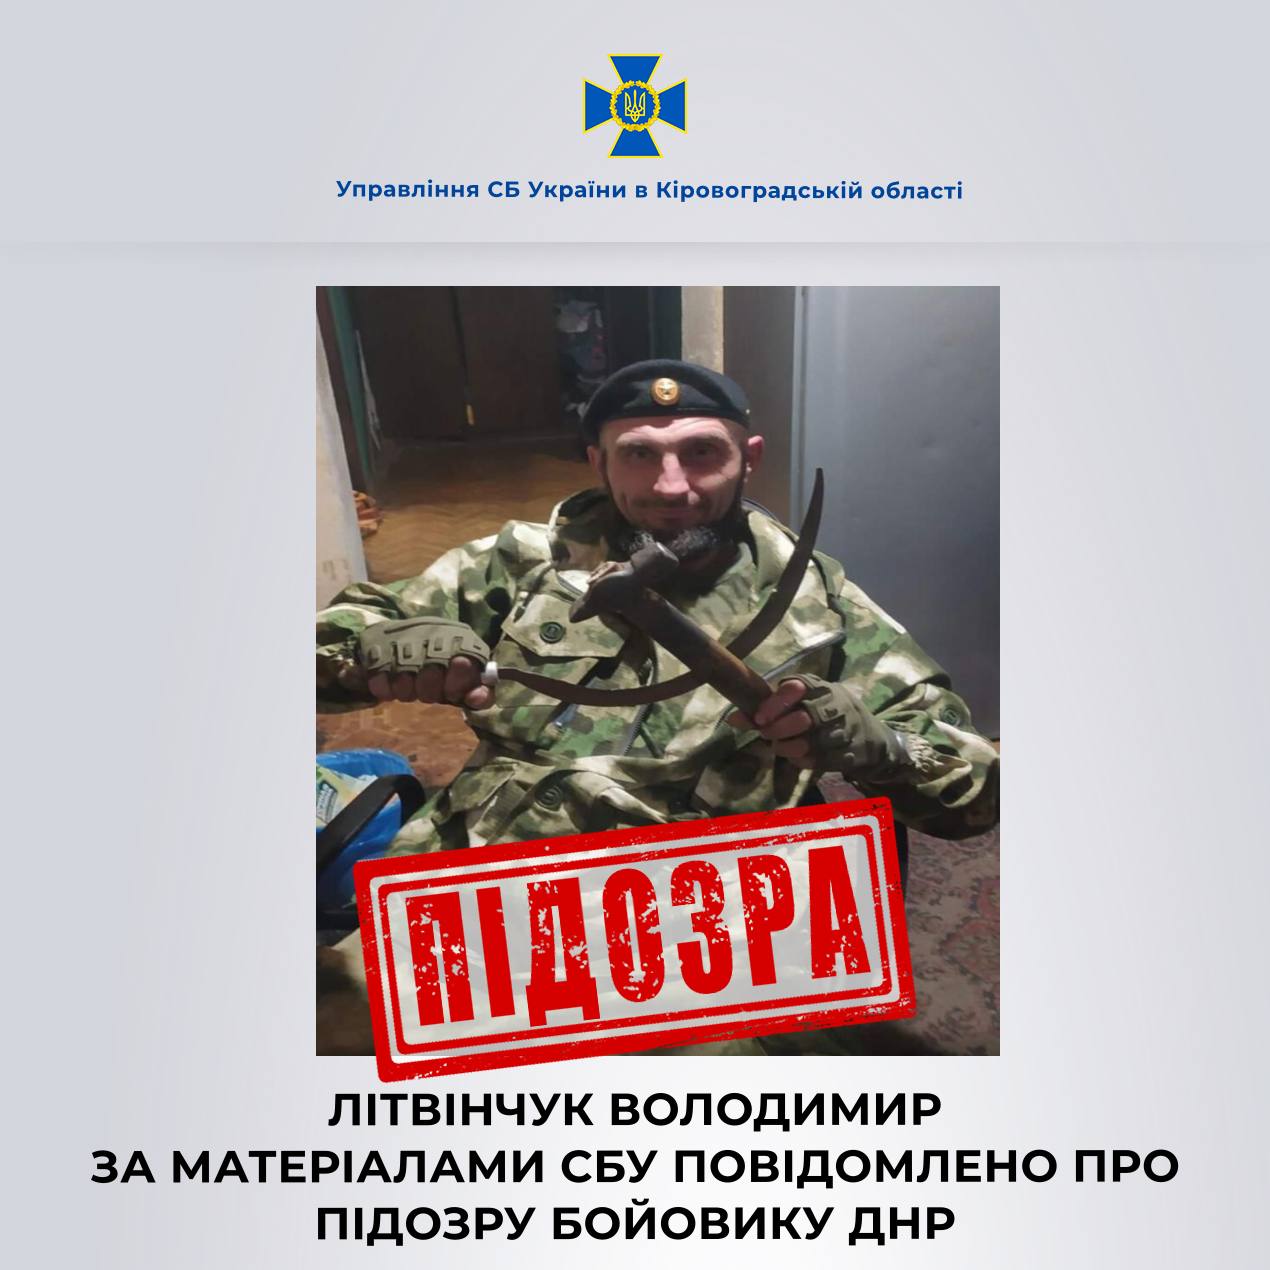 Справу зрадника з Кіровоградщини, який з 2014-го воює проти України, передали до суду